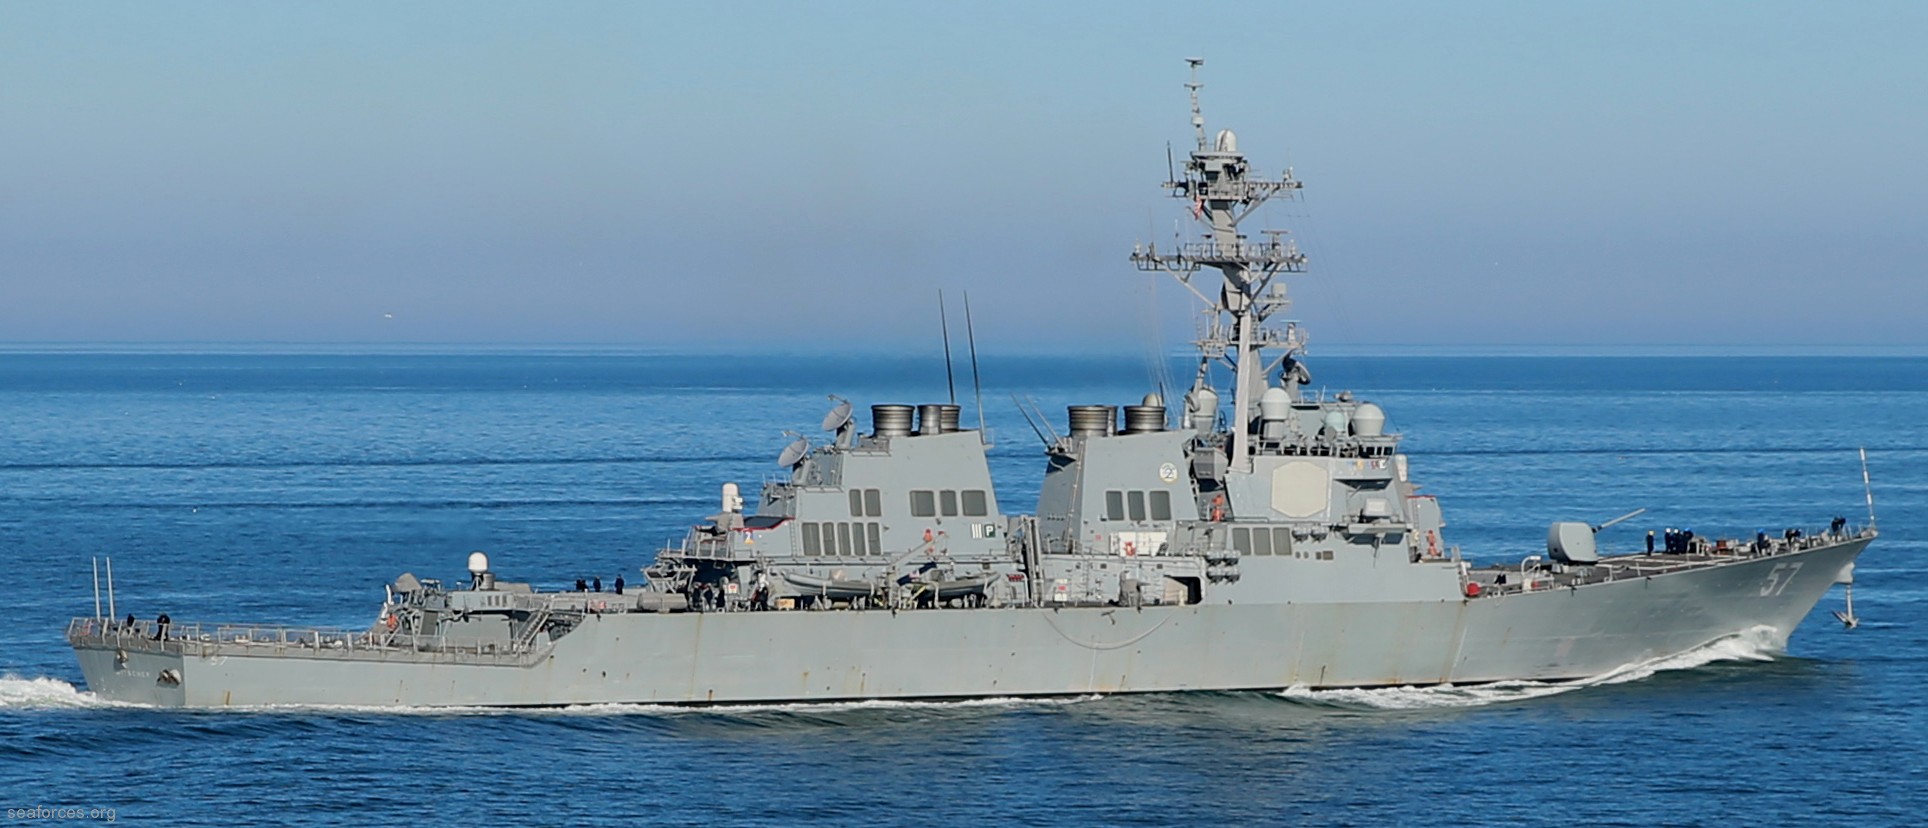 ddg-57 uss mitscher guided missile destroyer us navy 11